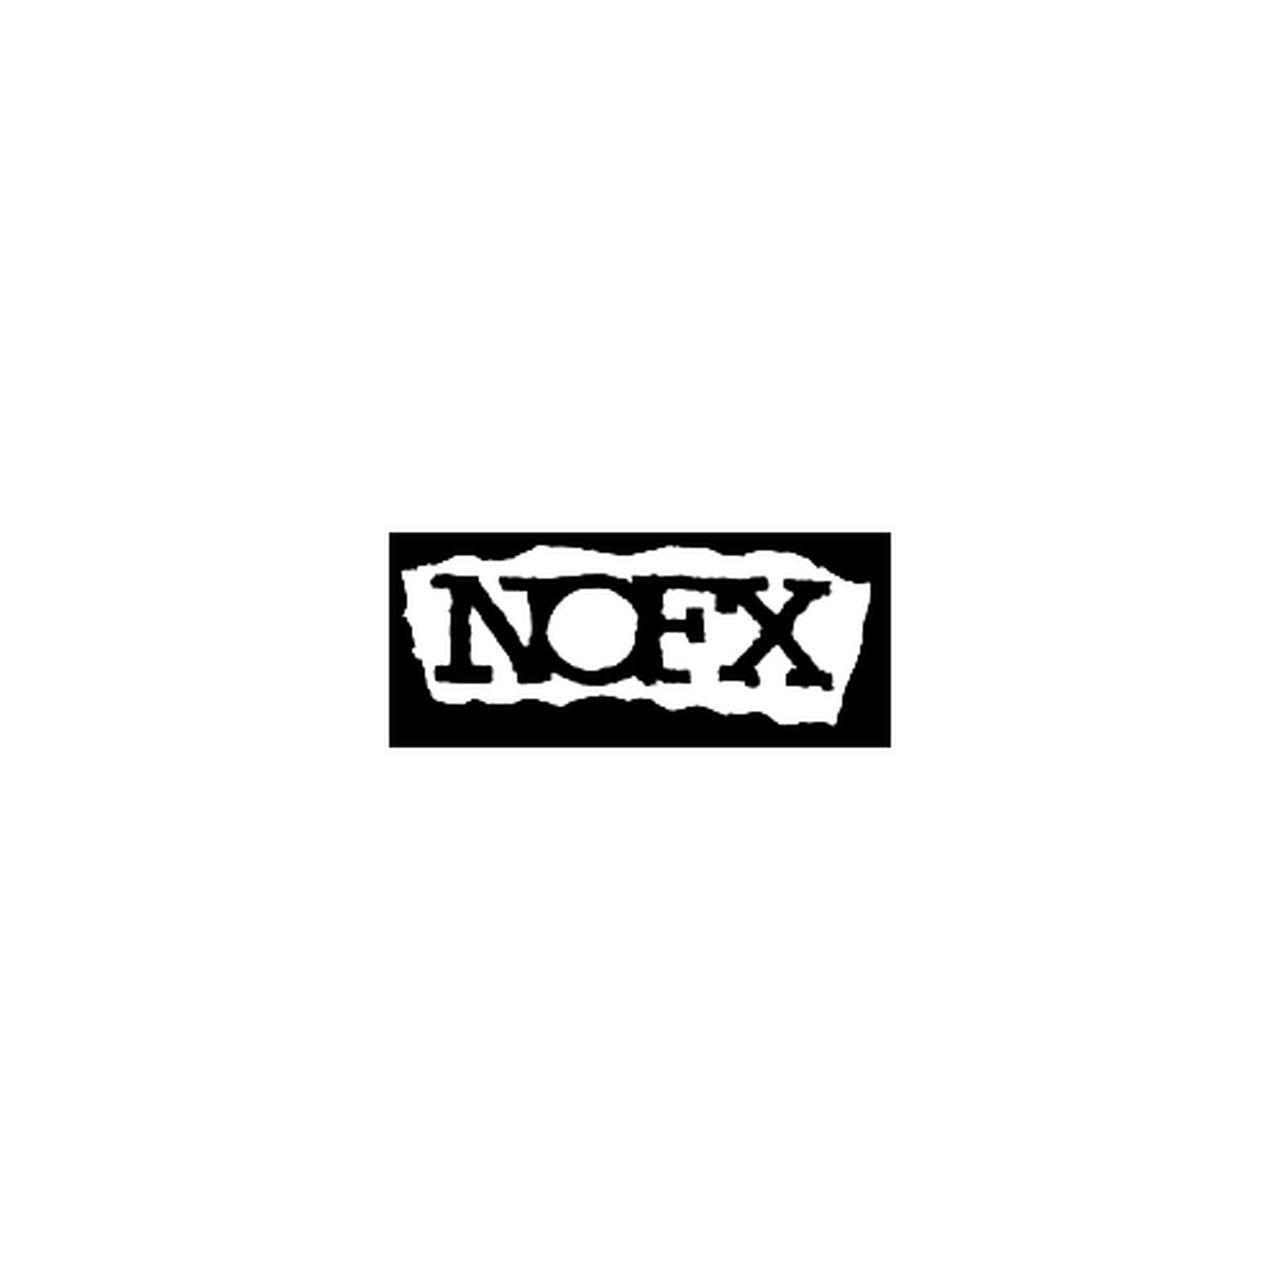 Nofx Logo - NOFX Rock Band Logo Decal